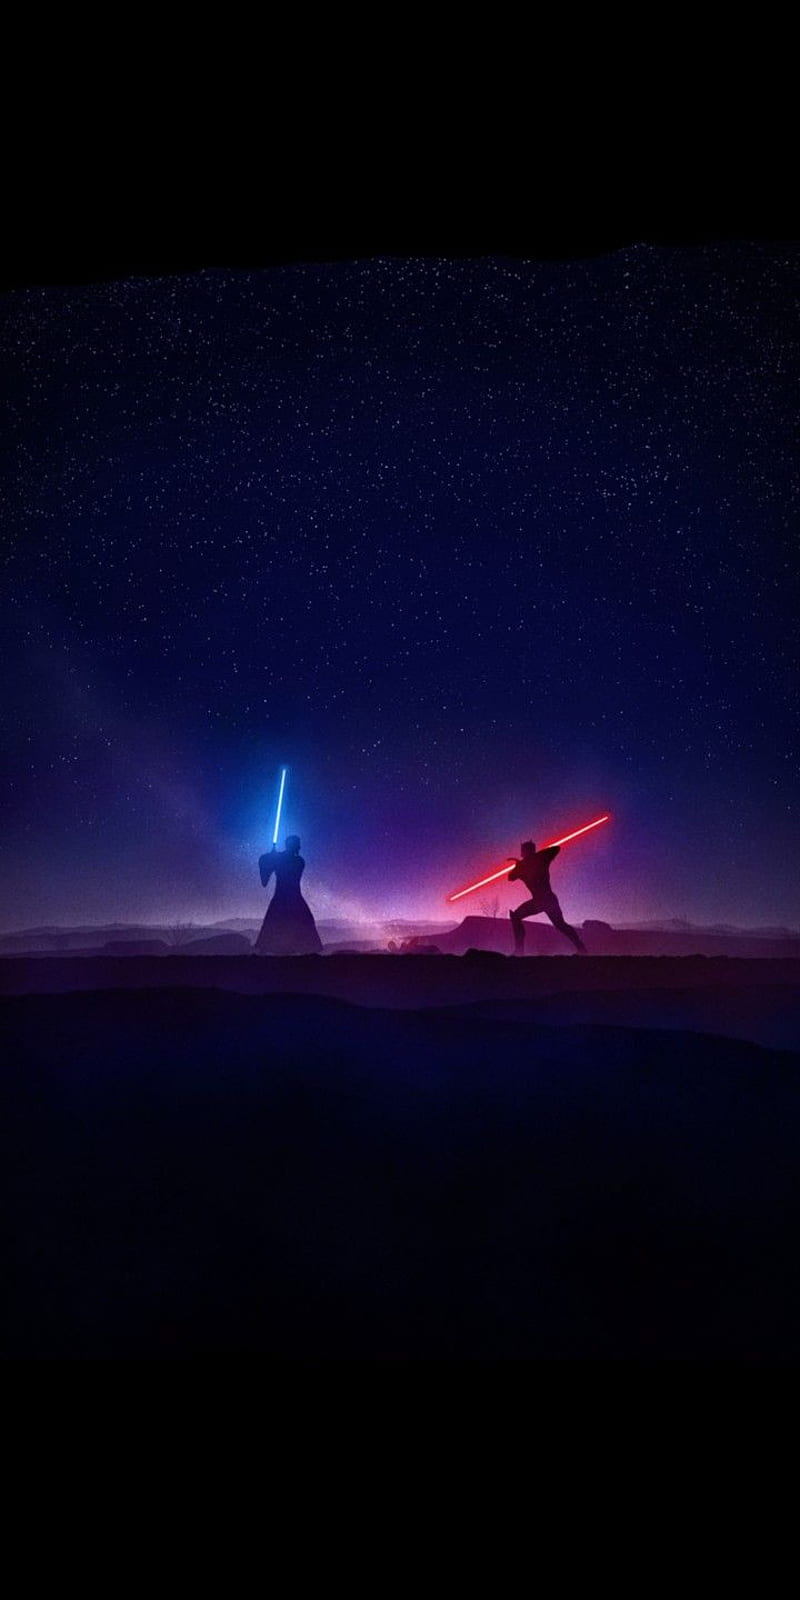 Star Wars Rebels, Kenobi vs Maul Lightsaber Duel by Marco Manev. 18:9 ...